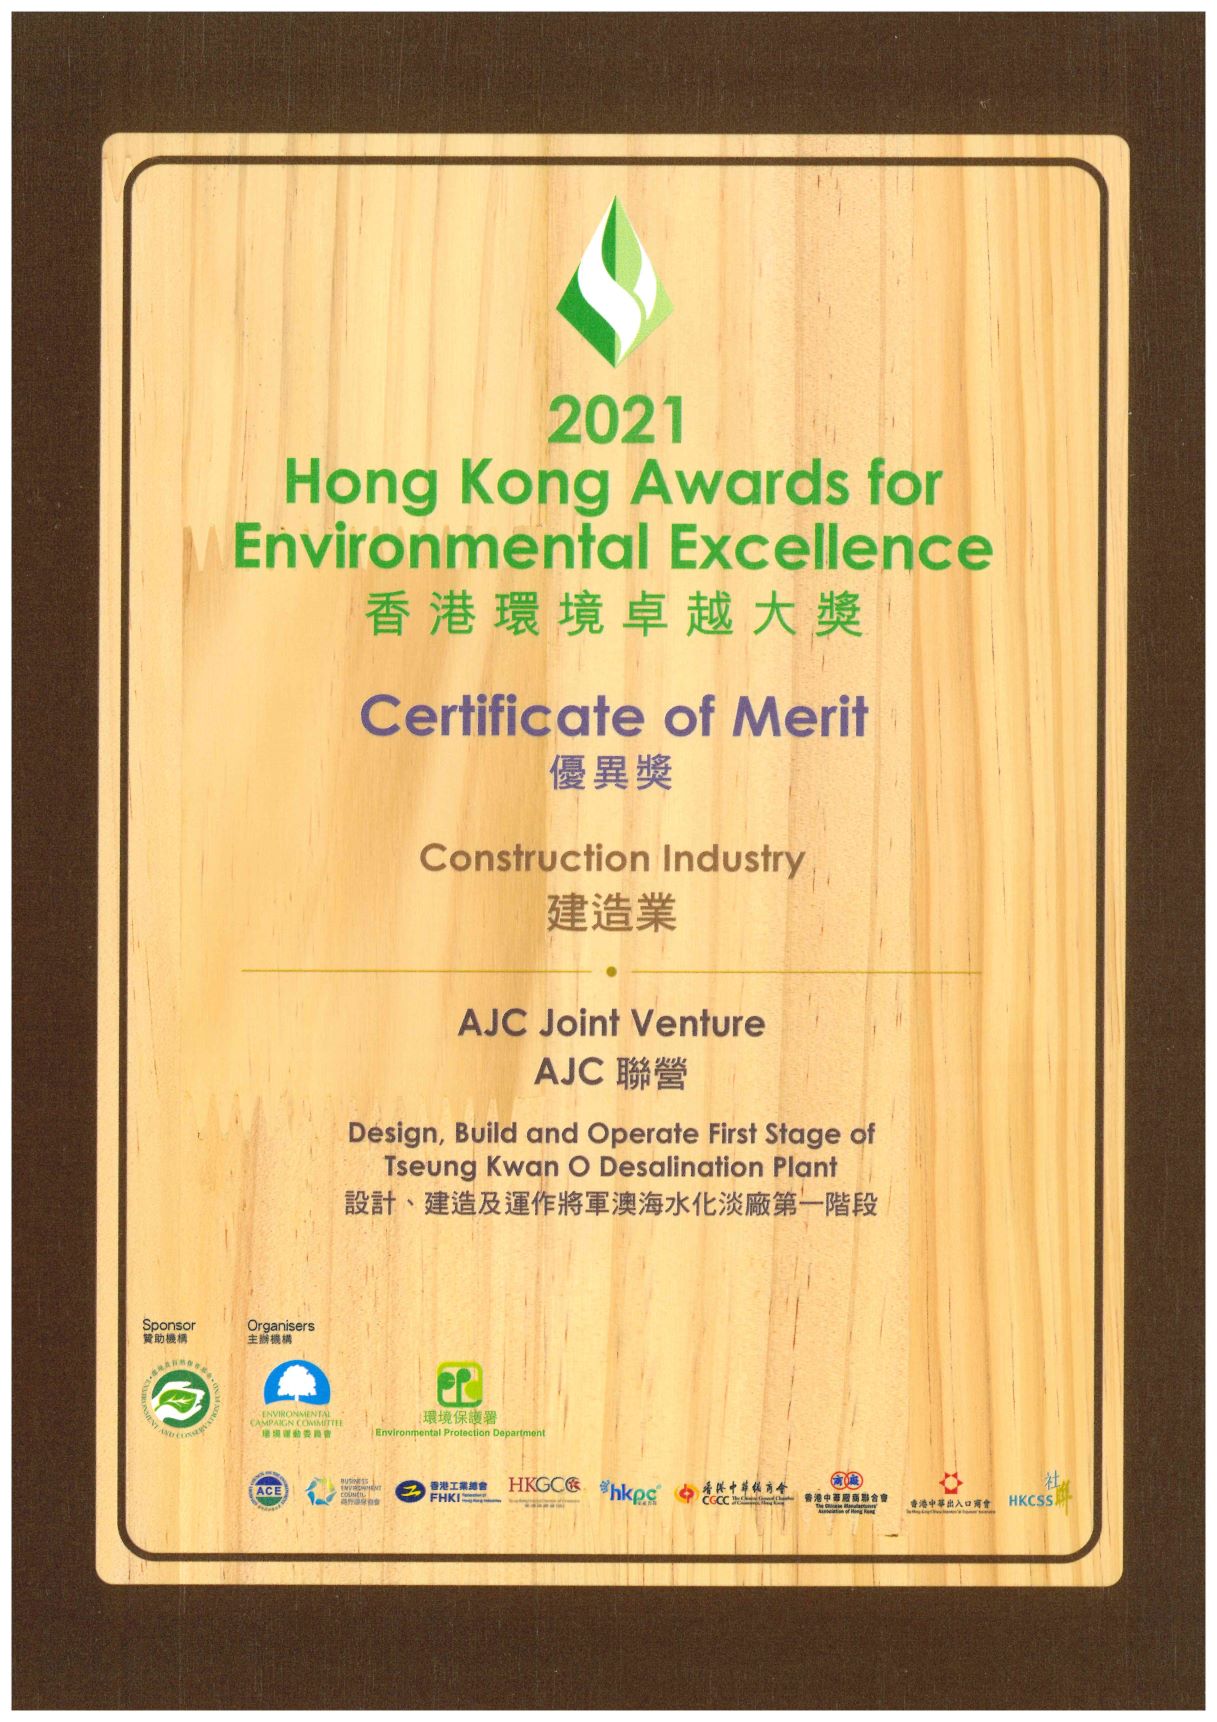 Hong Kong Award for Environmental Excellence 2021